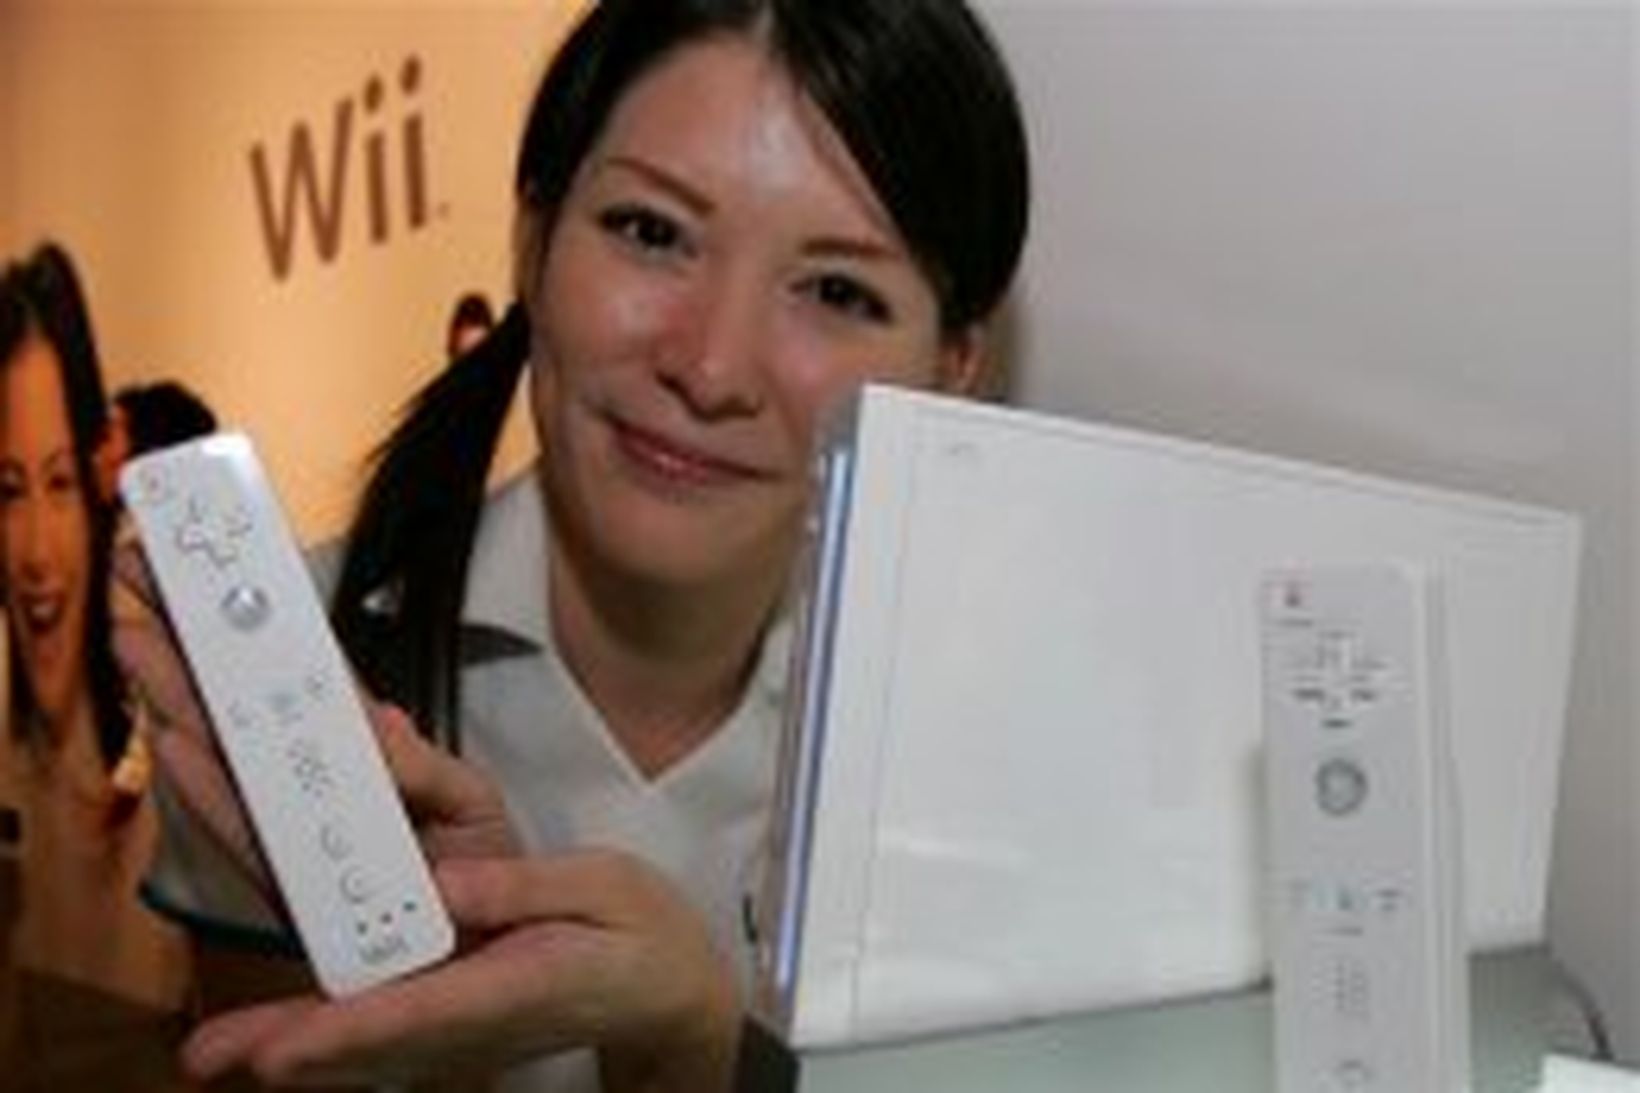 Wii leikjatölvan hefur notið mikilla vinsælda í Bandaríkjunum.